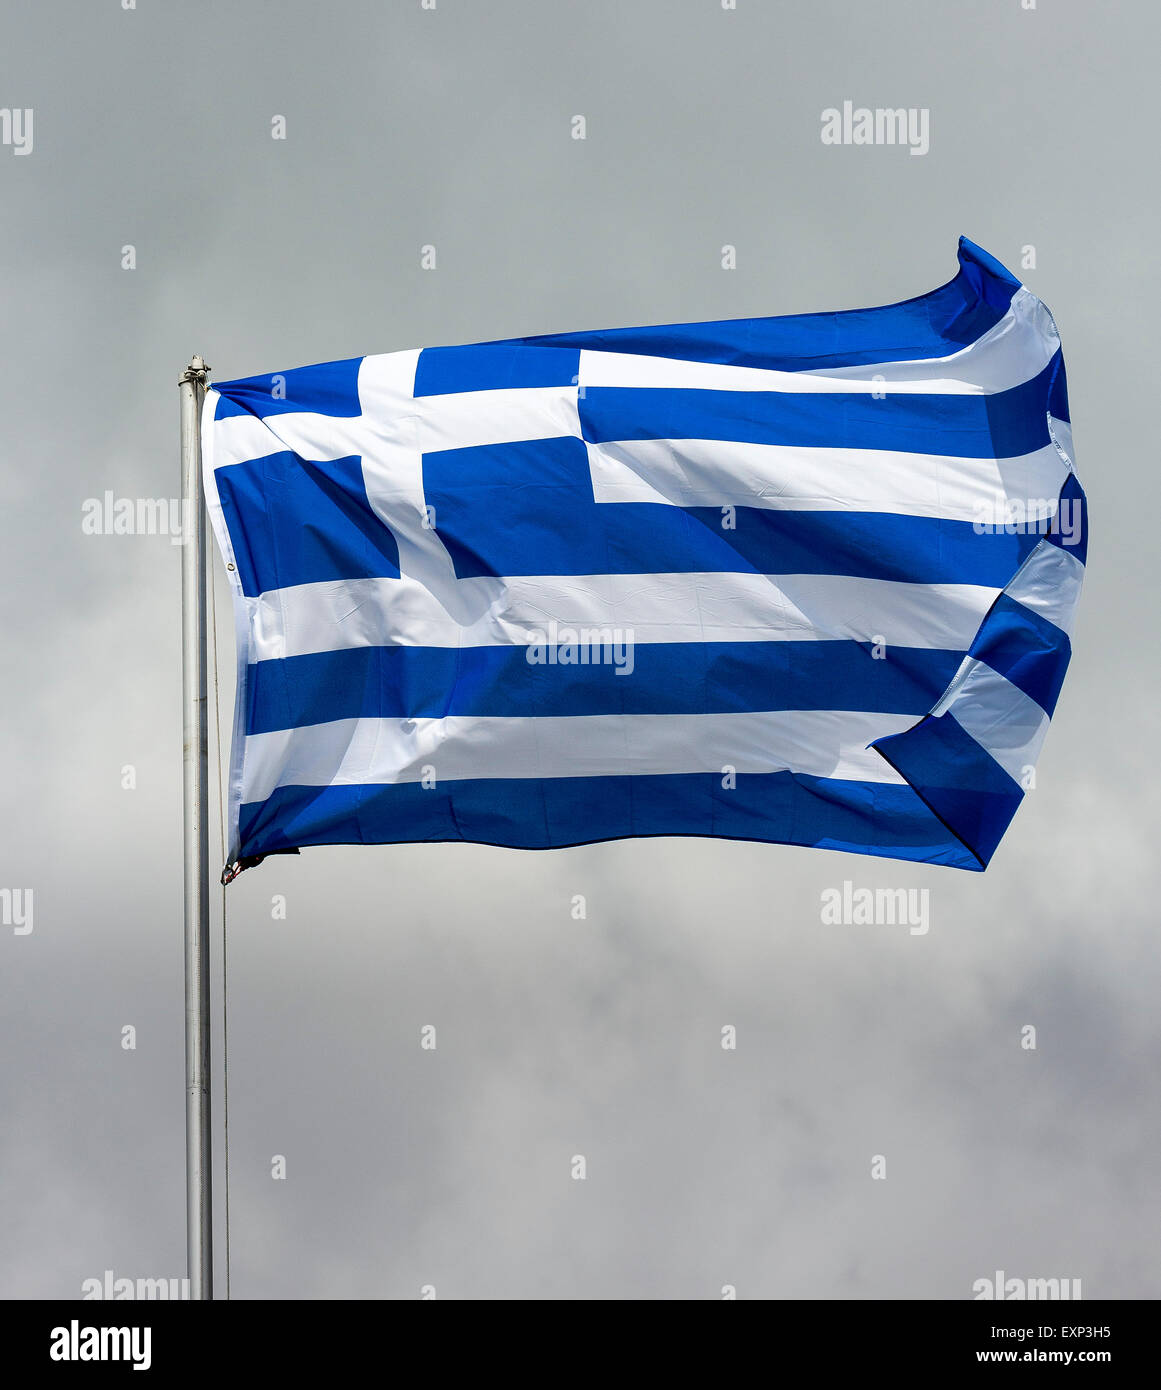 Bandera de Grecia, delante del cielo nublado, ondeando en el viento Foto de stock